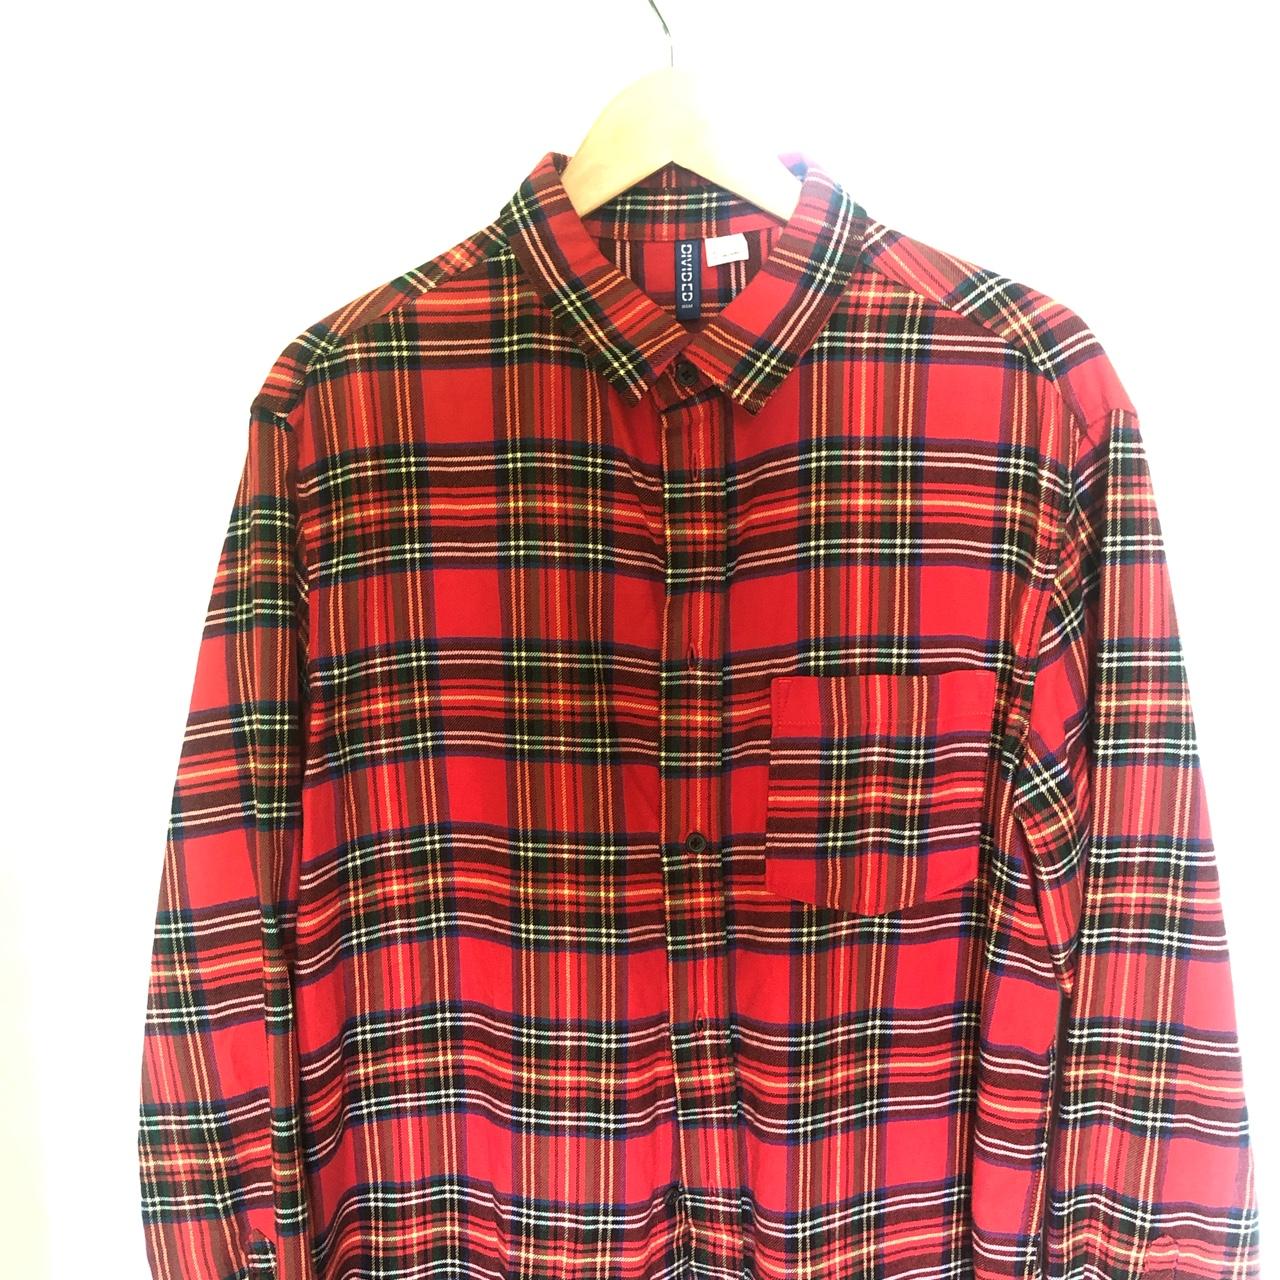 H&M men’s flannel shirt 👔 Size large Cotton... - Depop